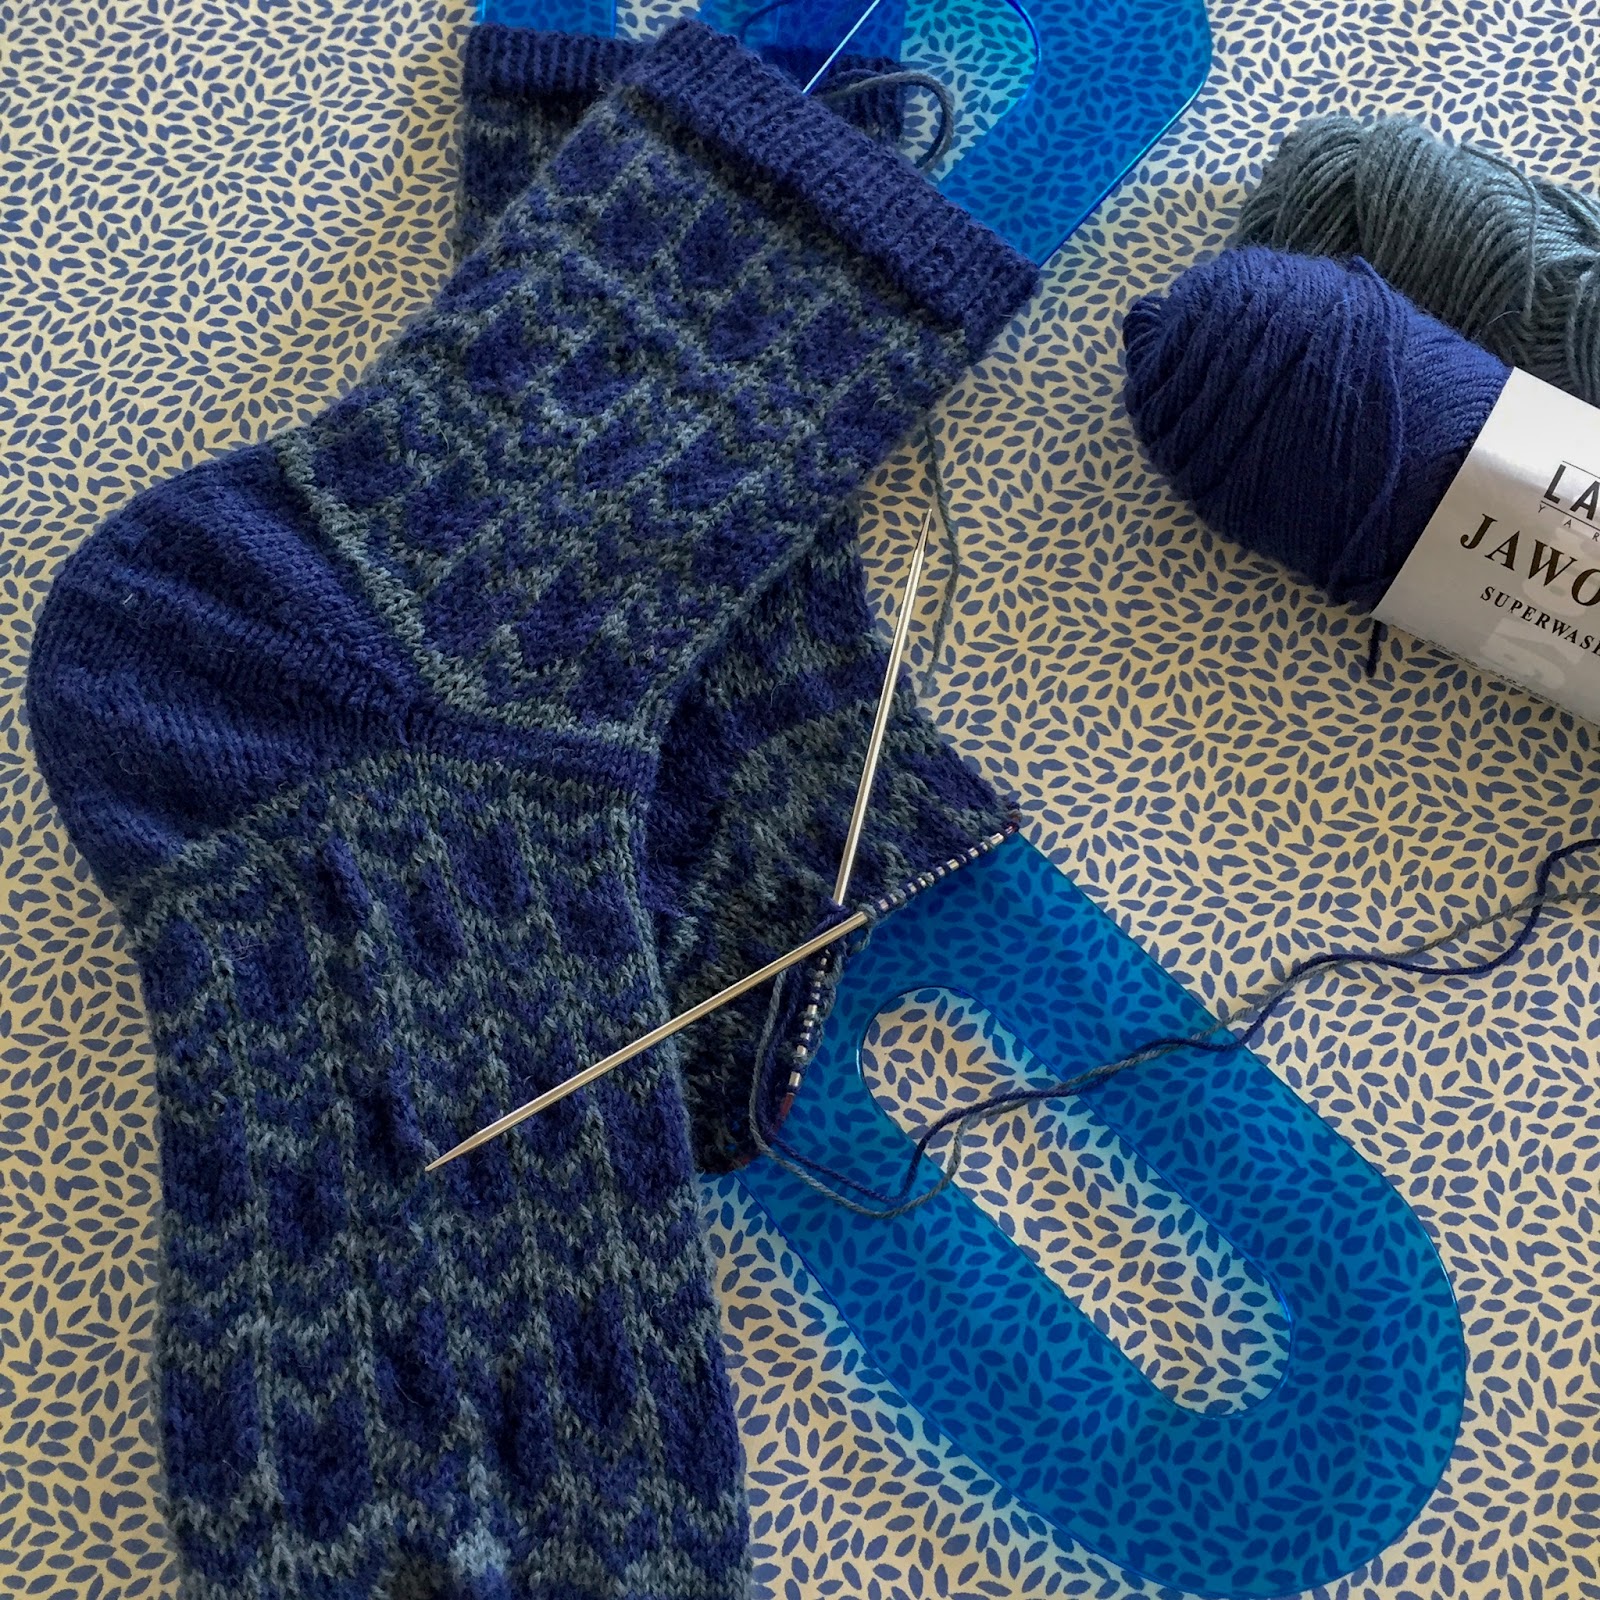 Knitting Kaae: 2018